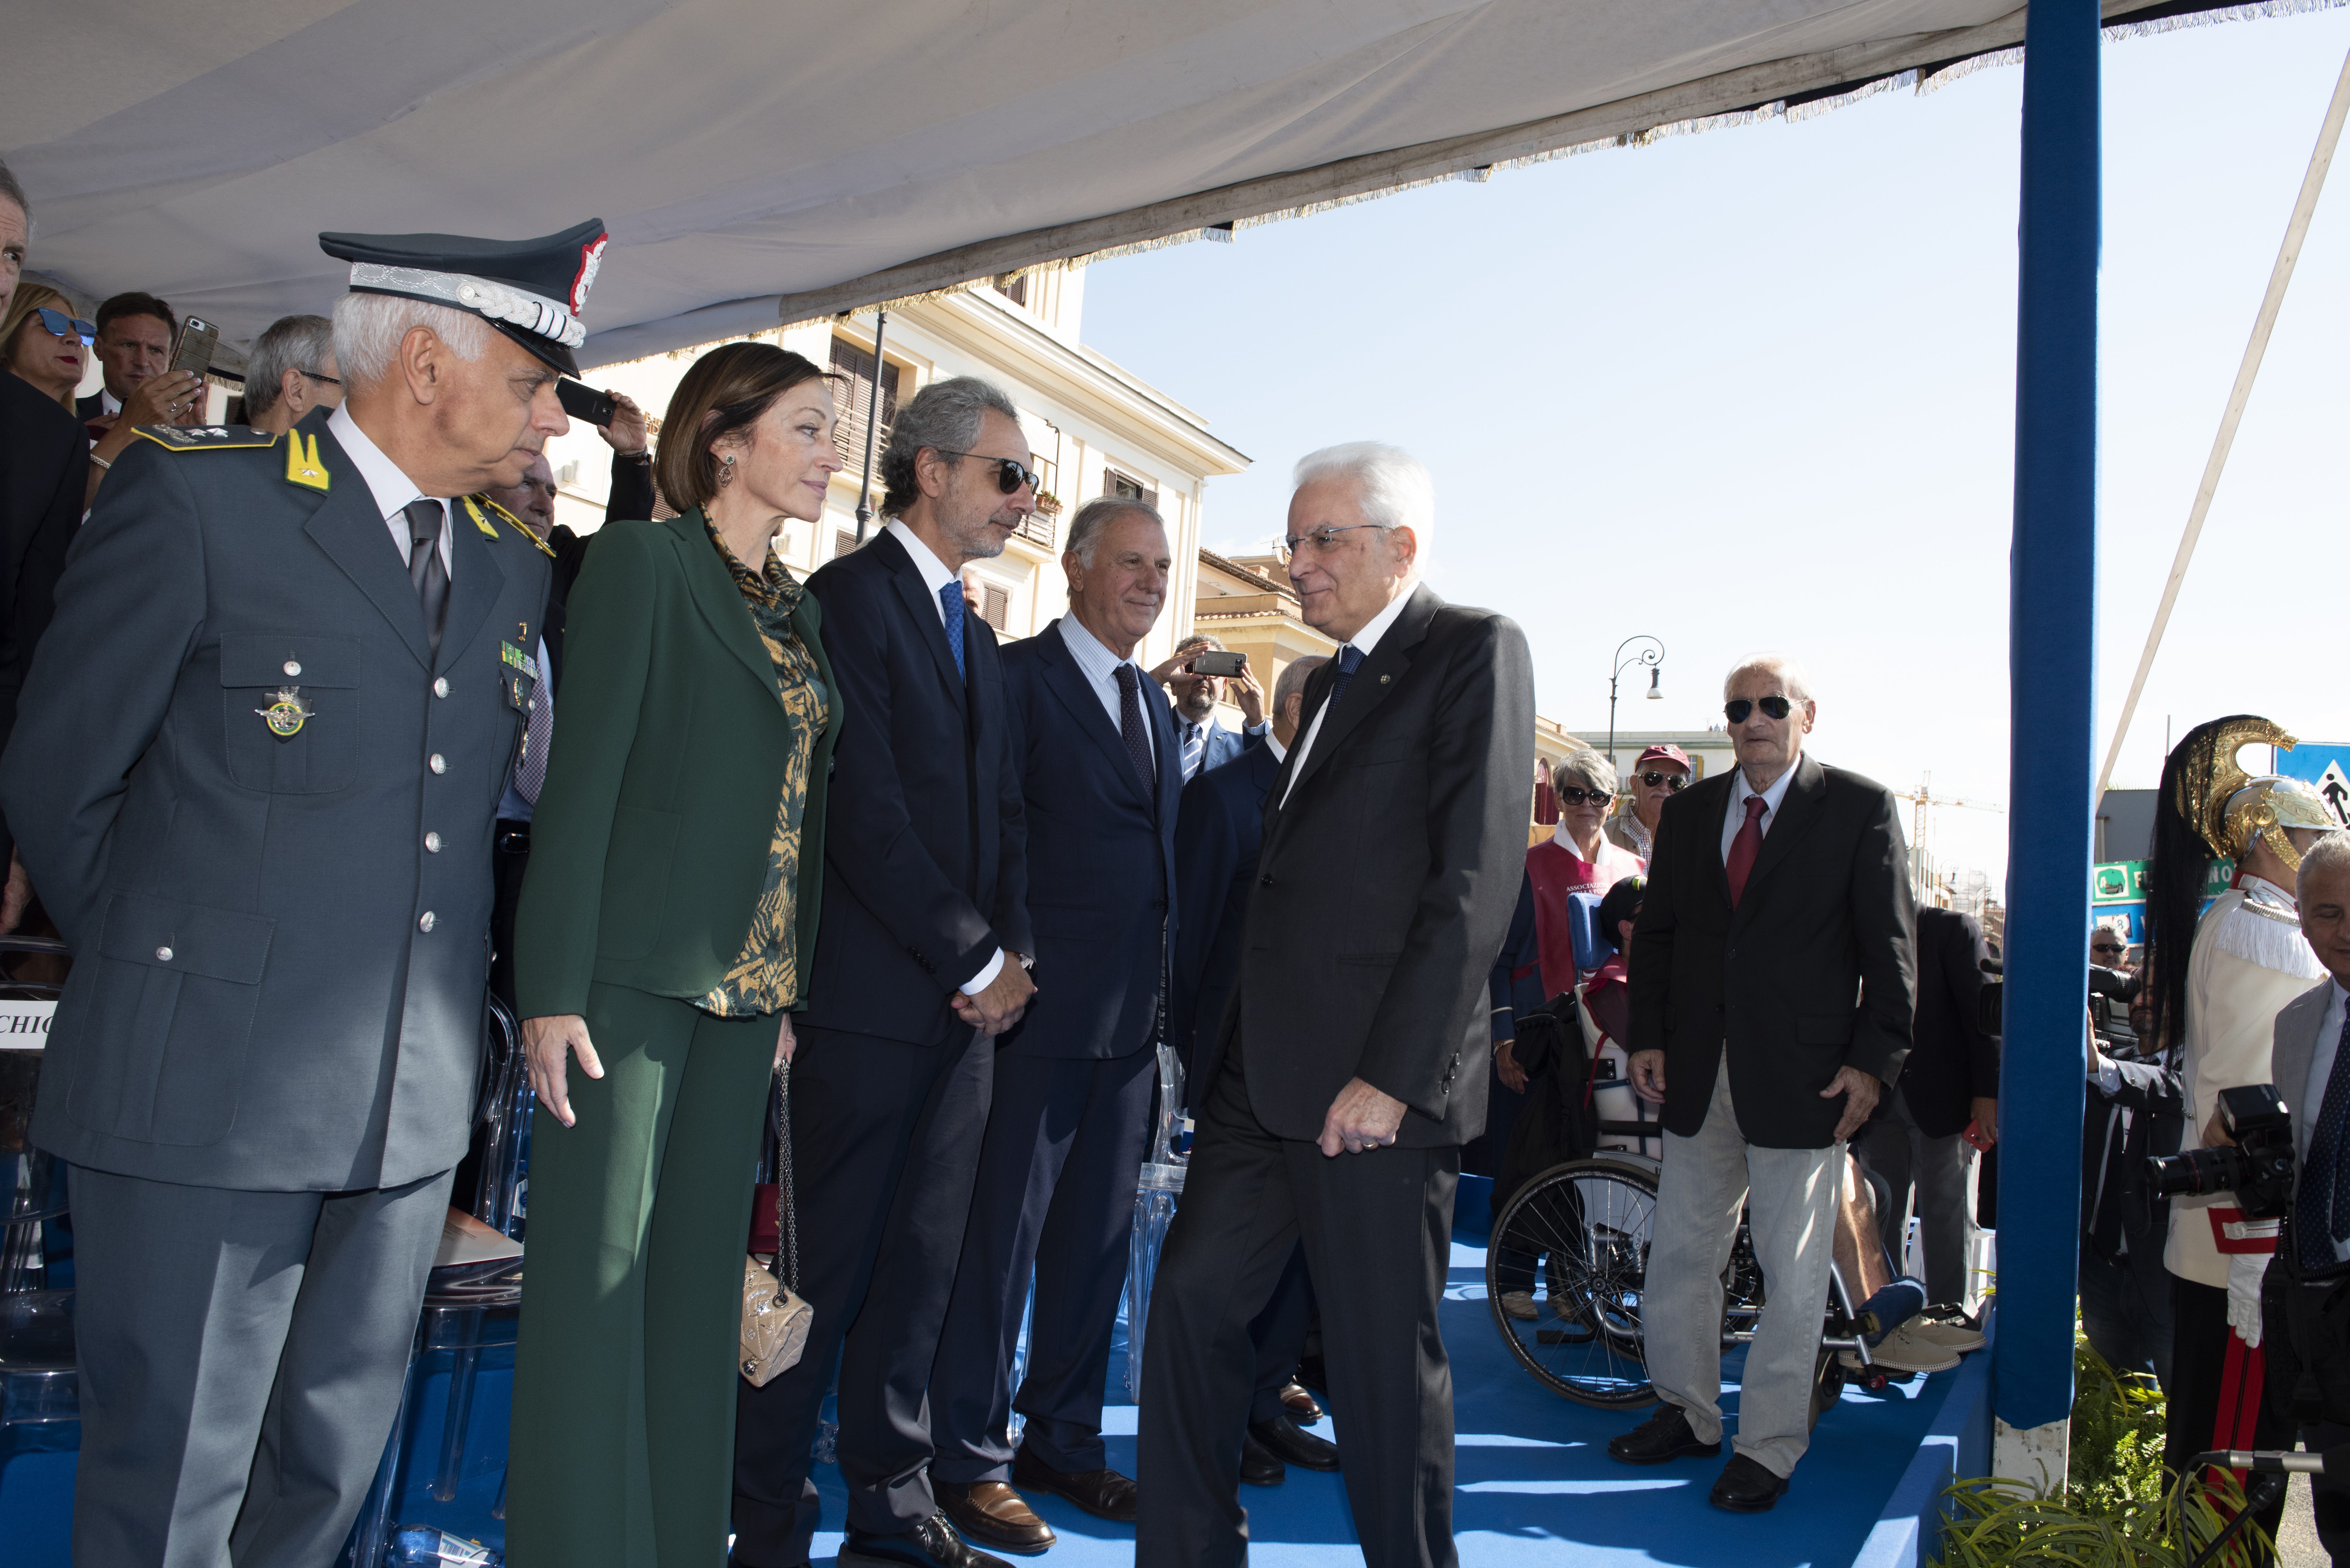 La cerimonia a Ostia per il 50° anniversario dell’Anps - Gli ospiti e le autorità